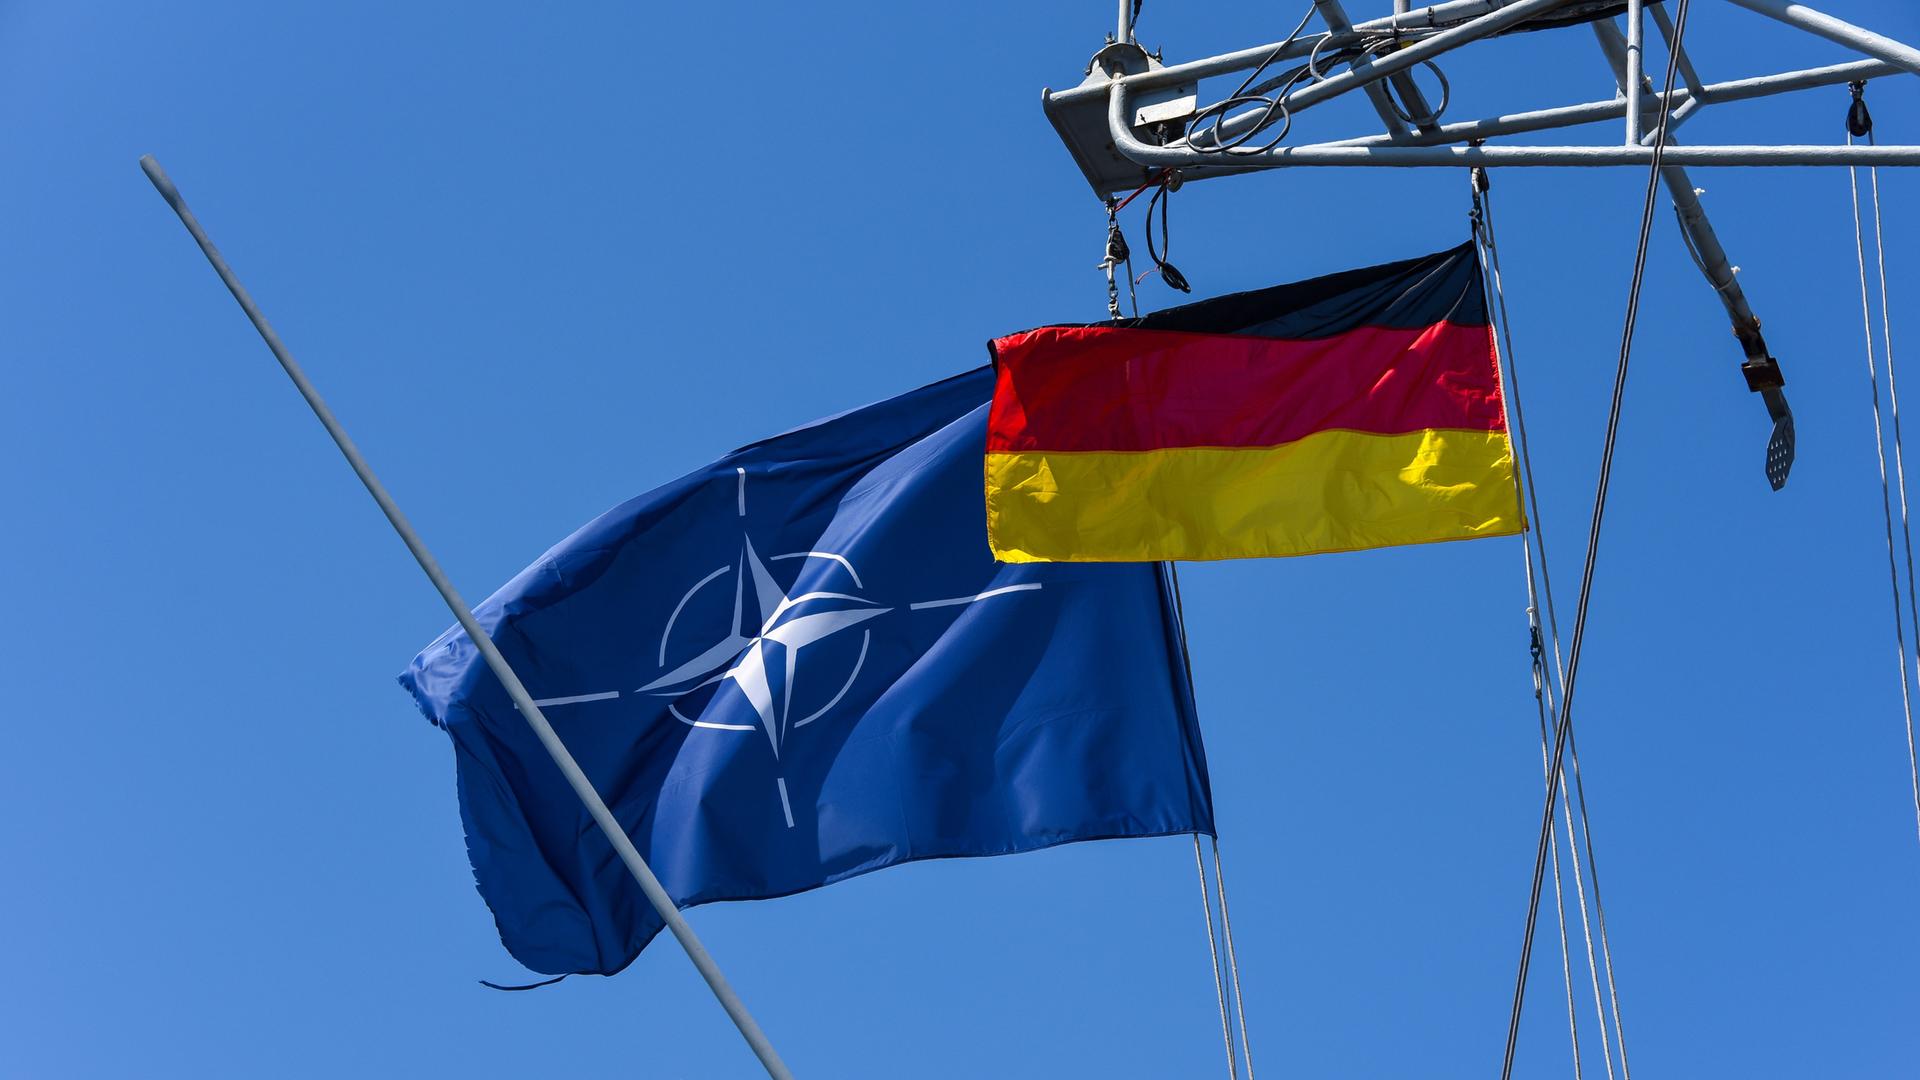 Die wehende Flagge der NATO und die Deutschlandflagge an einem Schiff vor blauem Himmel.